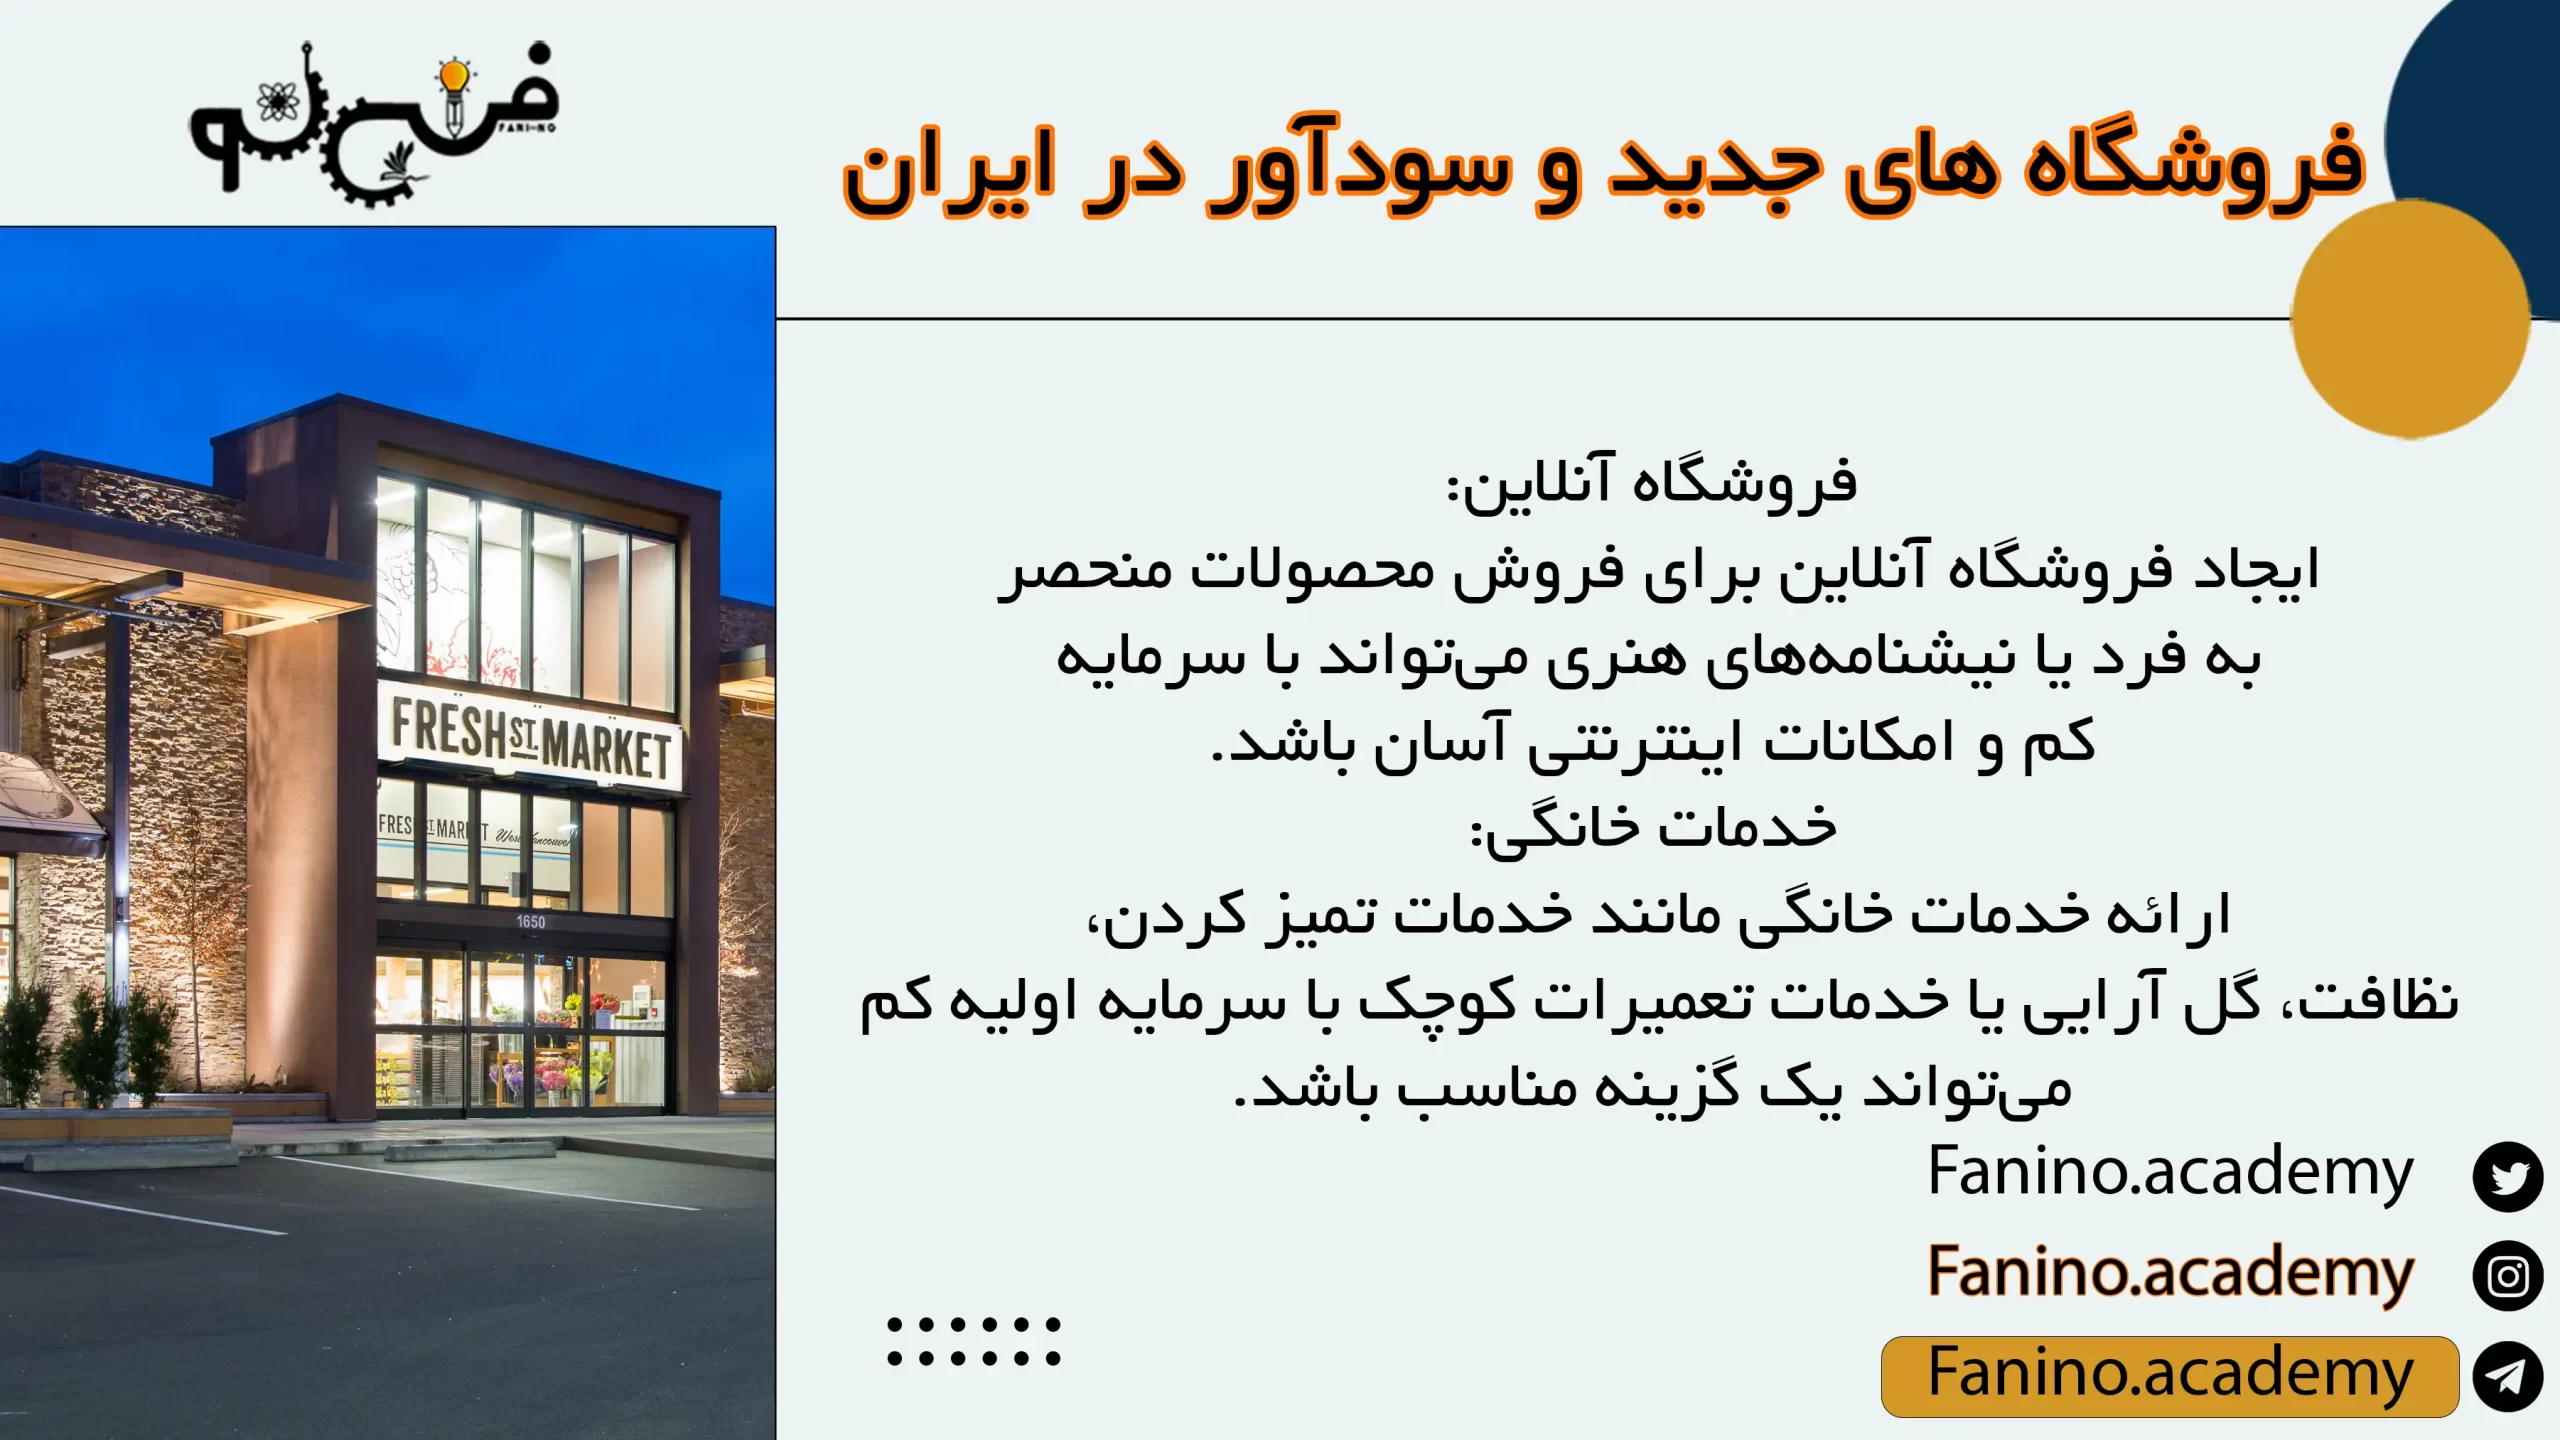 فروشگاه های جدید و سودآور در ایران